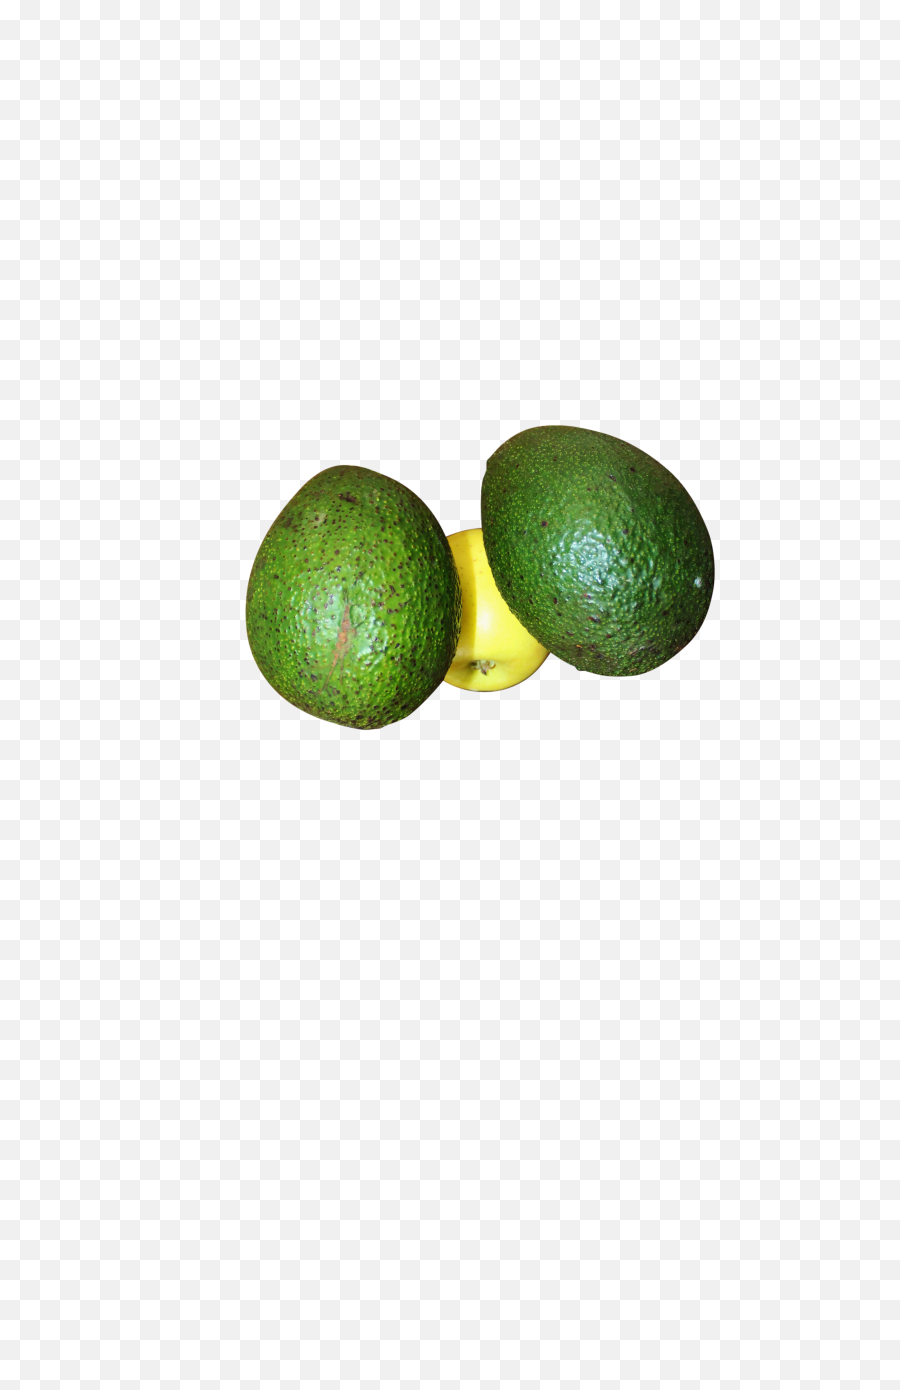 Avocado Png Image - Persian Lime,Avocado Transparent Background